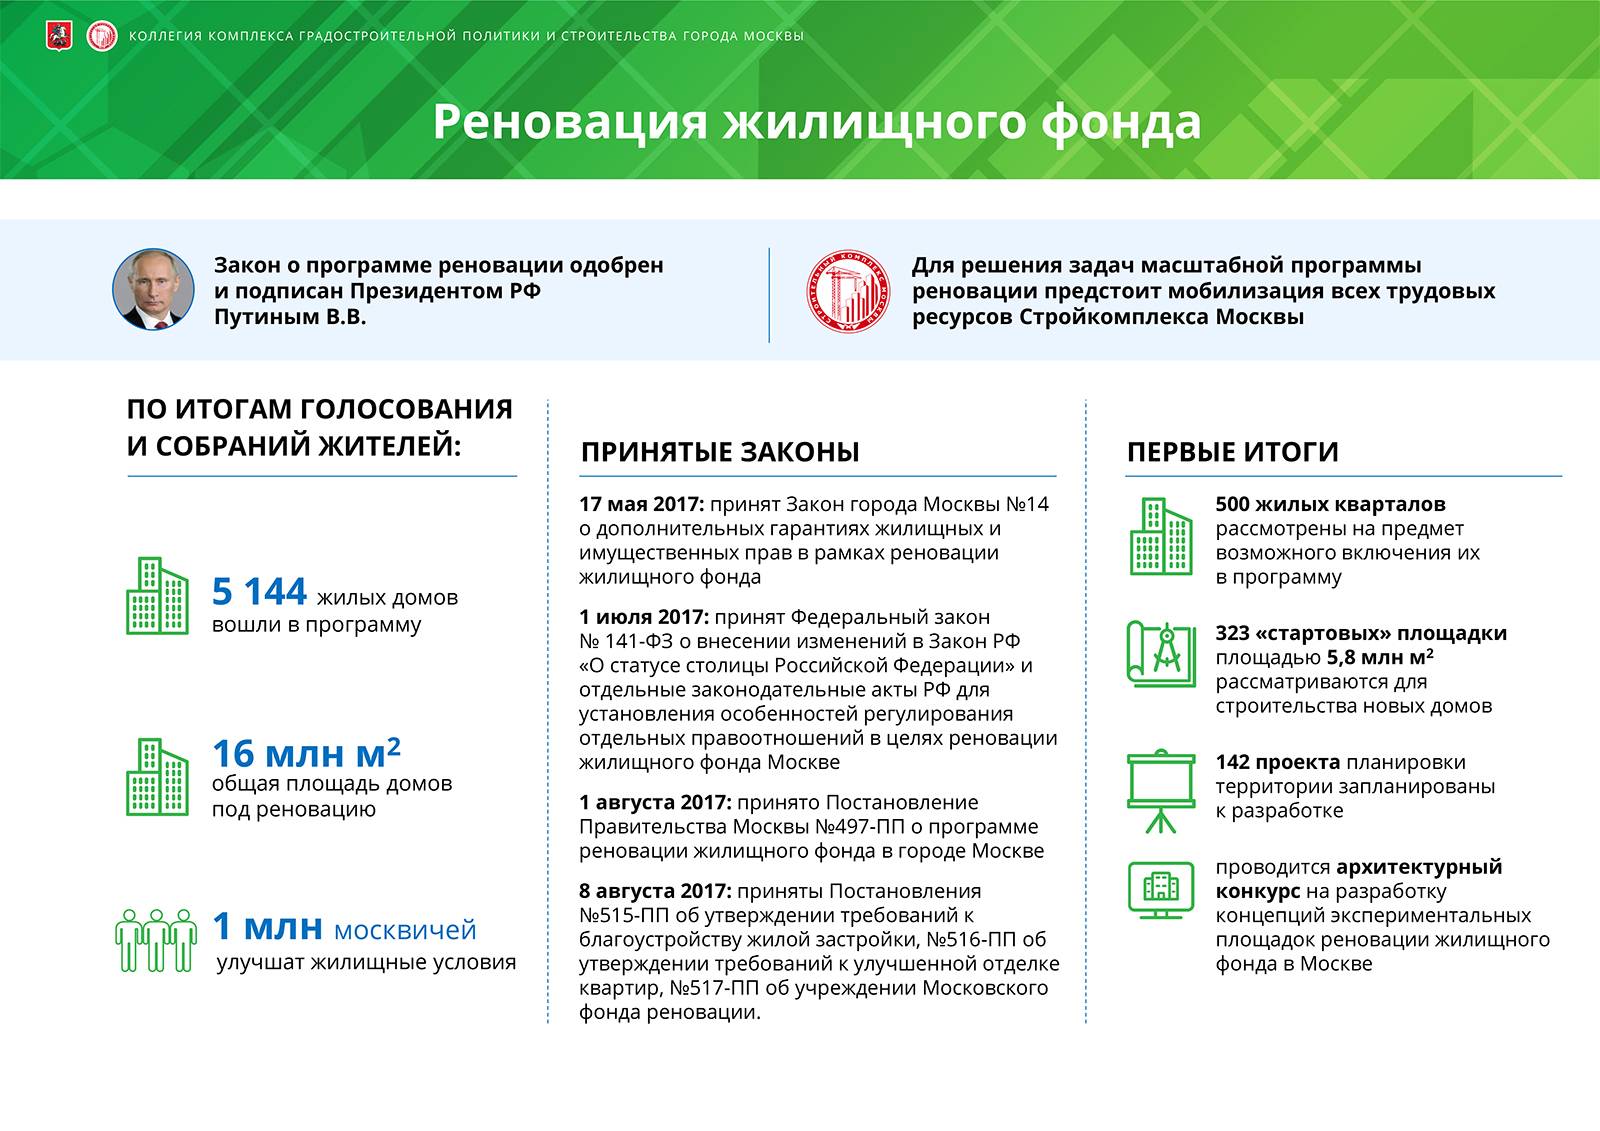 Федеральный закон о реновации жилищного фонда в москве: основные положения. юридическое консультирование